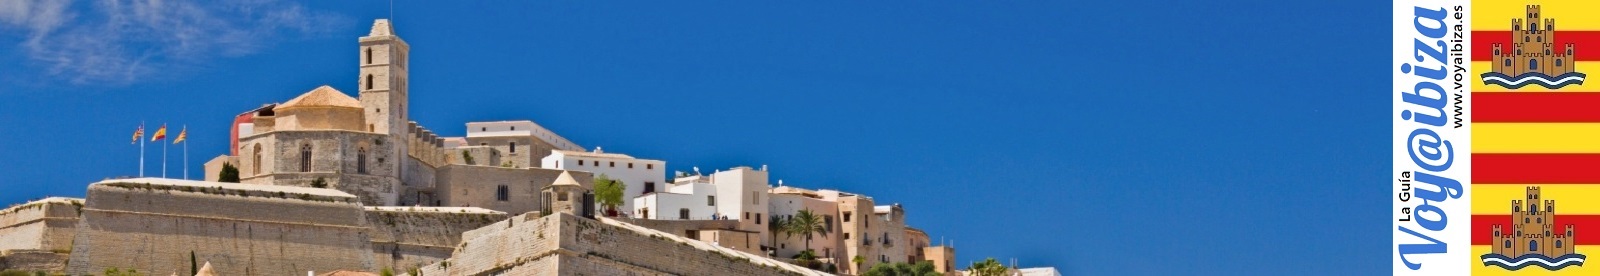 Historia de Ibiza: Dalt Vila, murallas, Catedral...